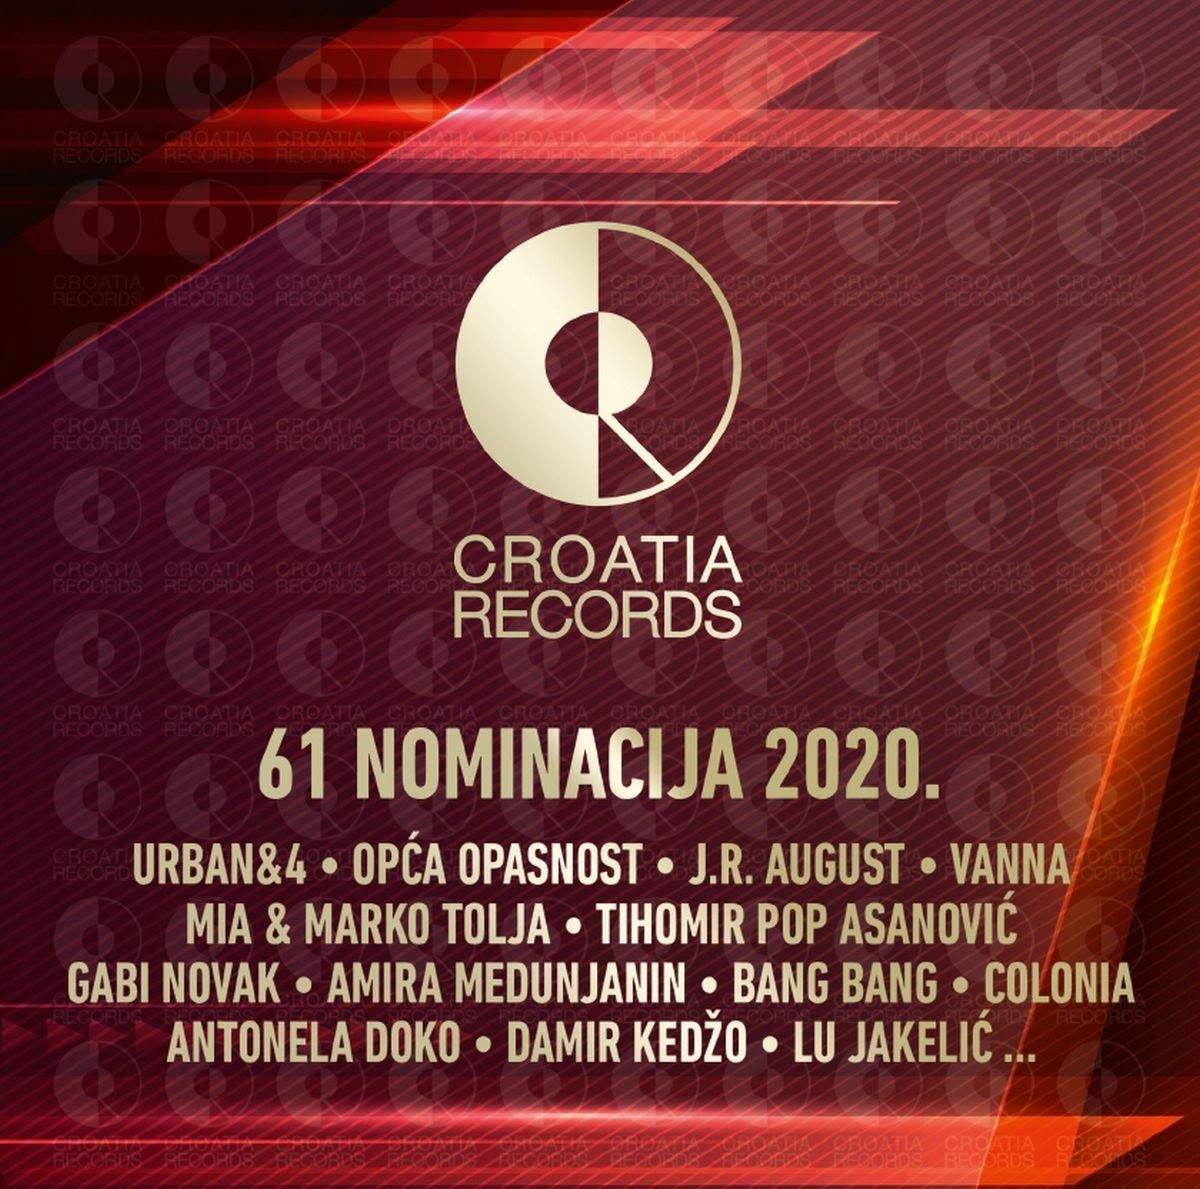 Dvostruko CD izdanje 61 nominacija 2020. donosi sve glazbene uspješnice nominirane za nagradu Porin